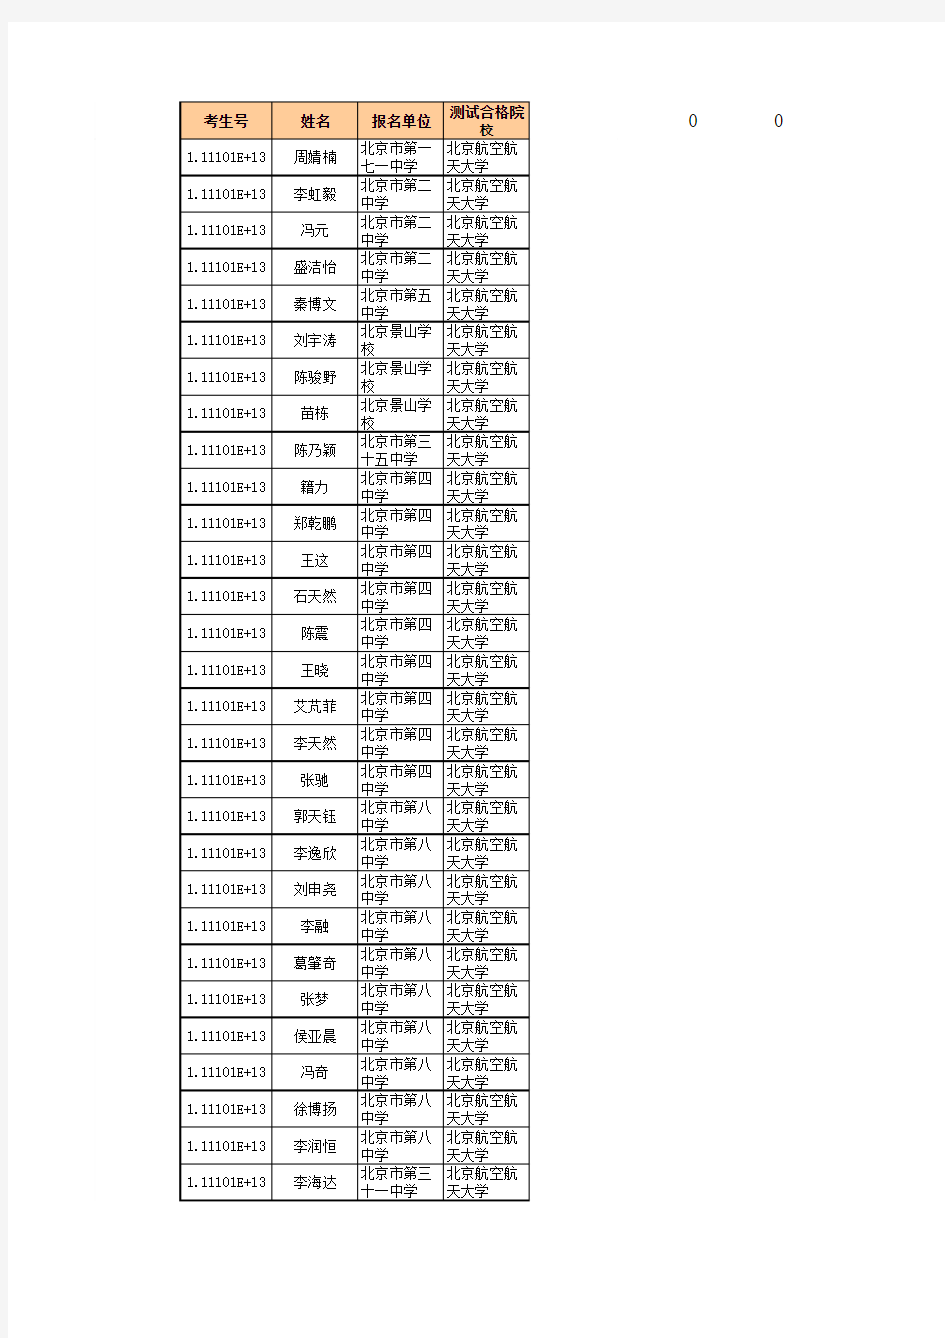 2012年北京自主招生数据库